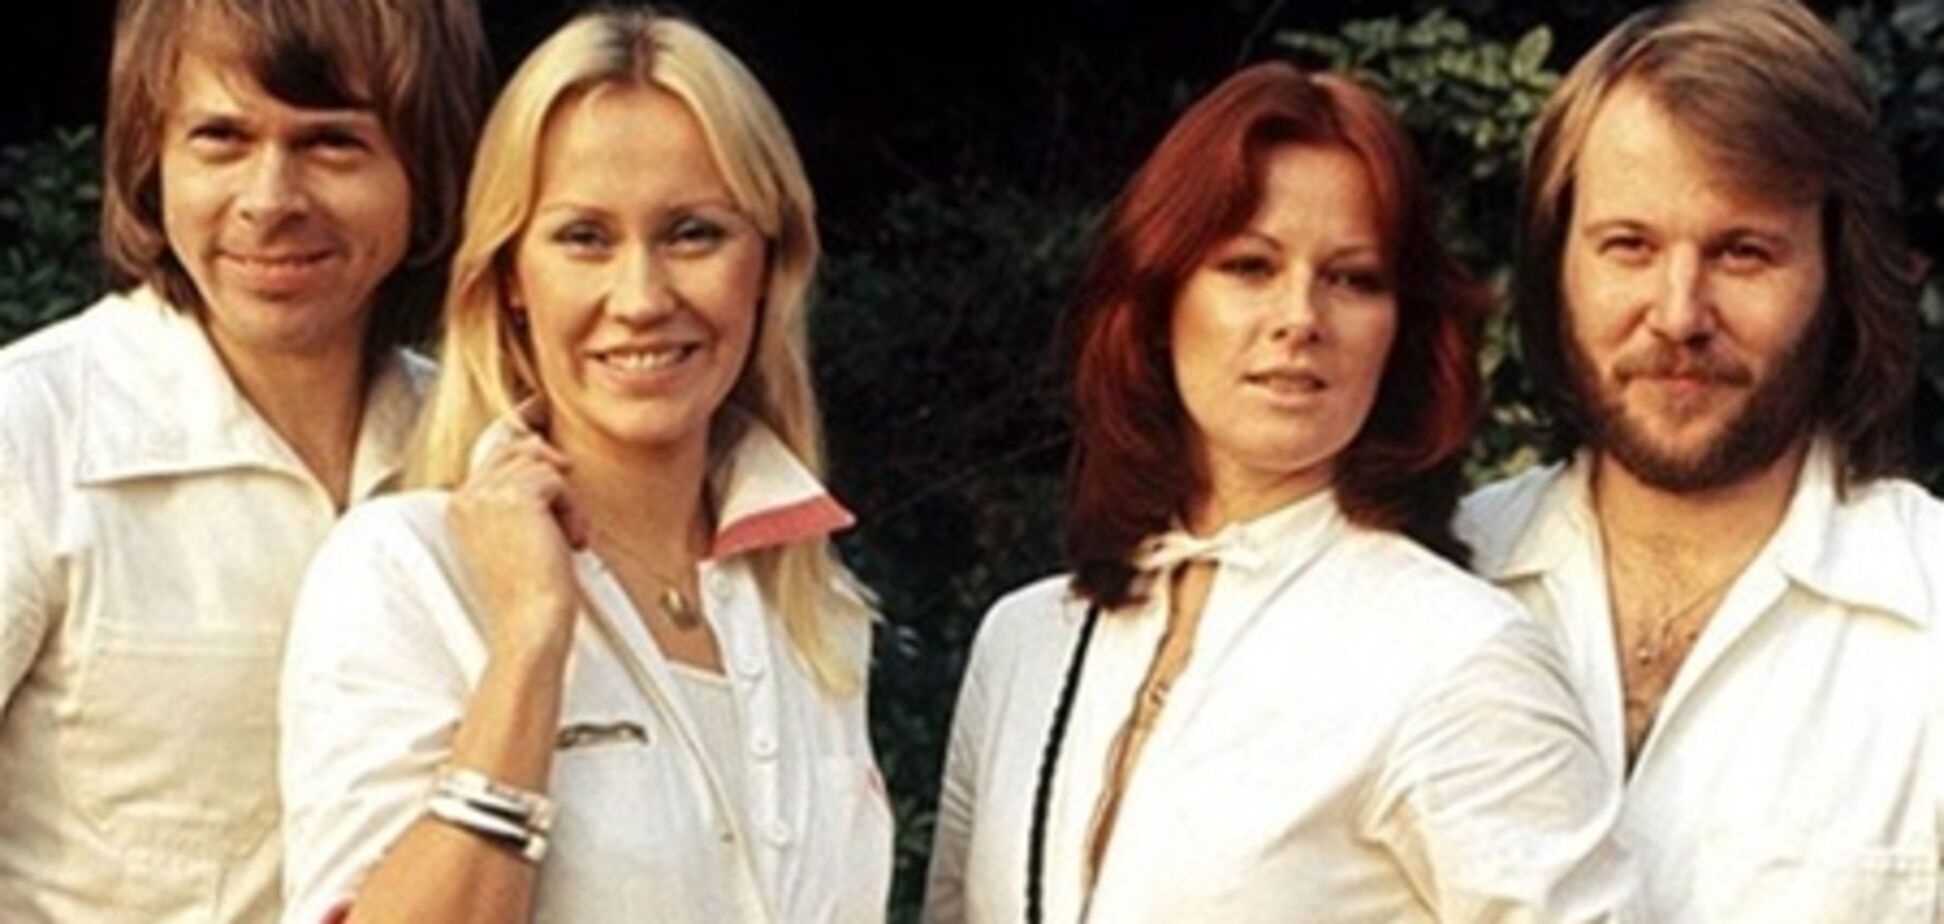 Участники ABBA пишут гимн для 'Евровидения-2013'